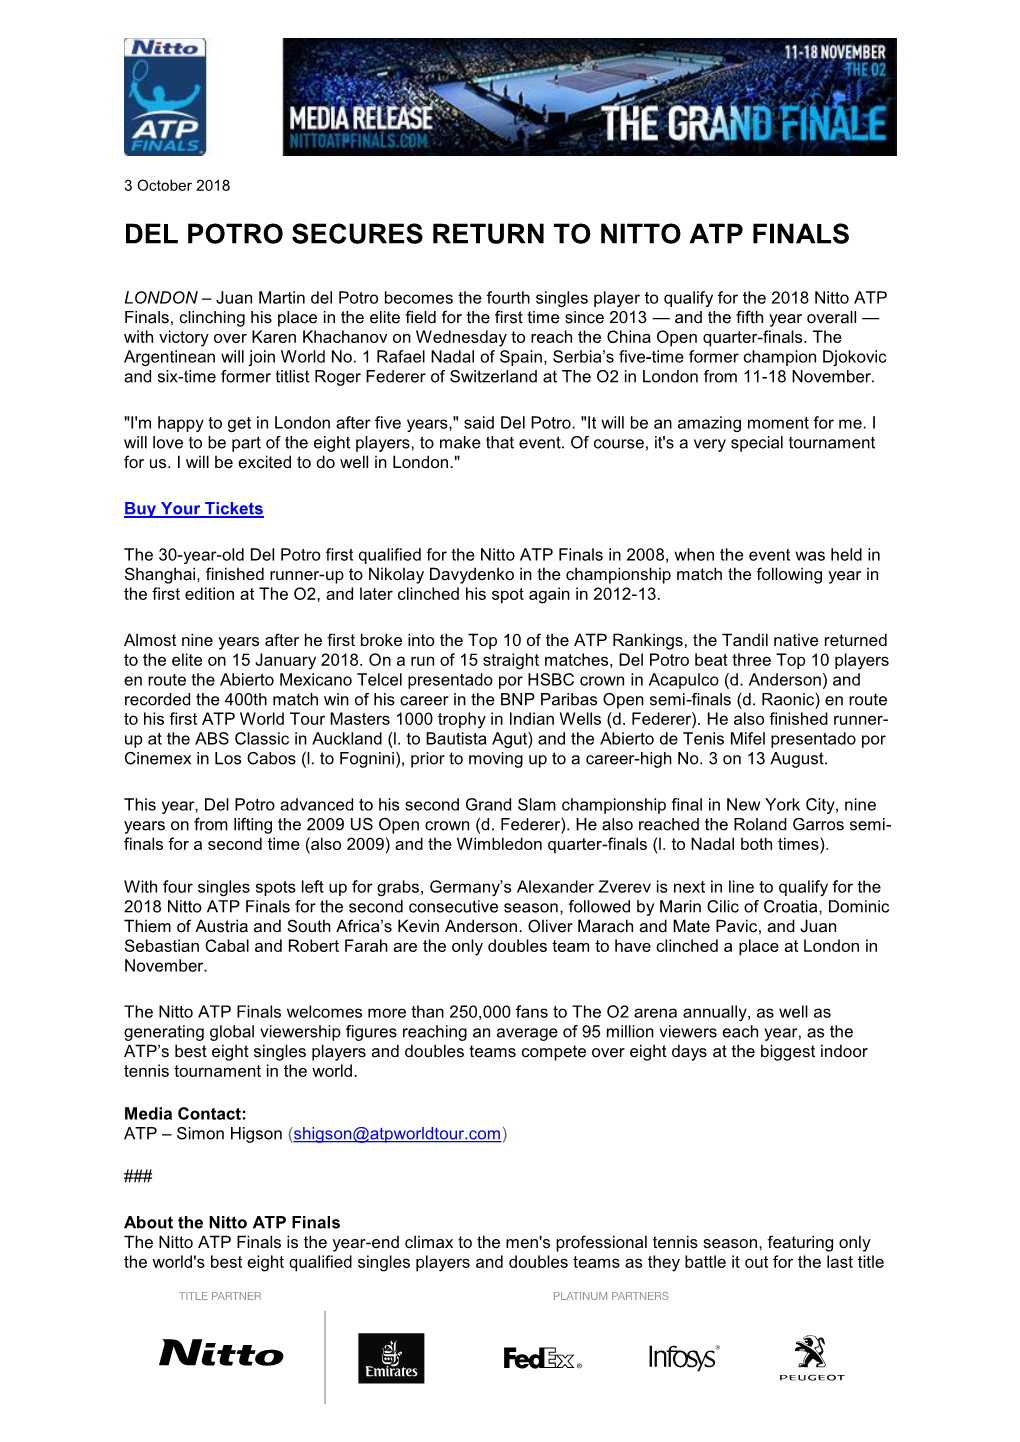 Del Potro Secures Return to Nitto Atp Finals